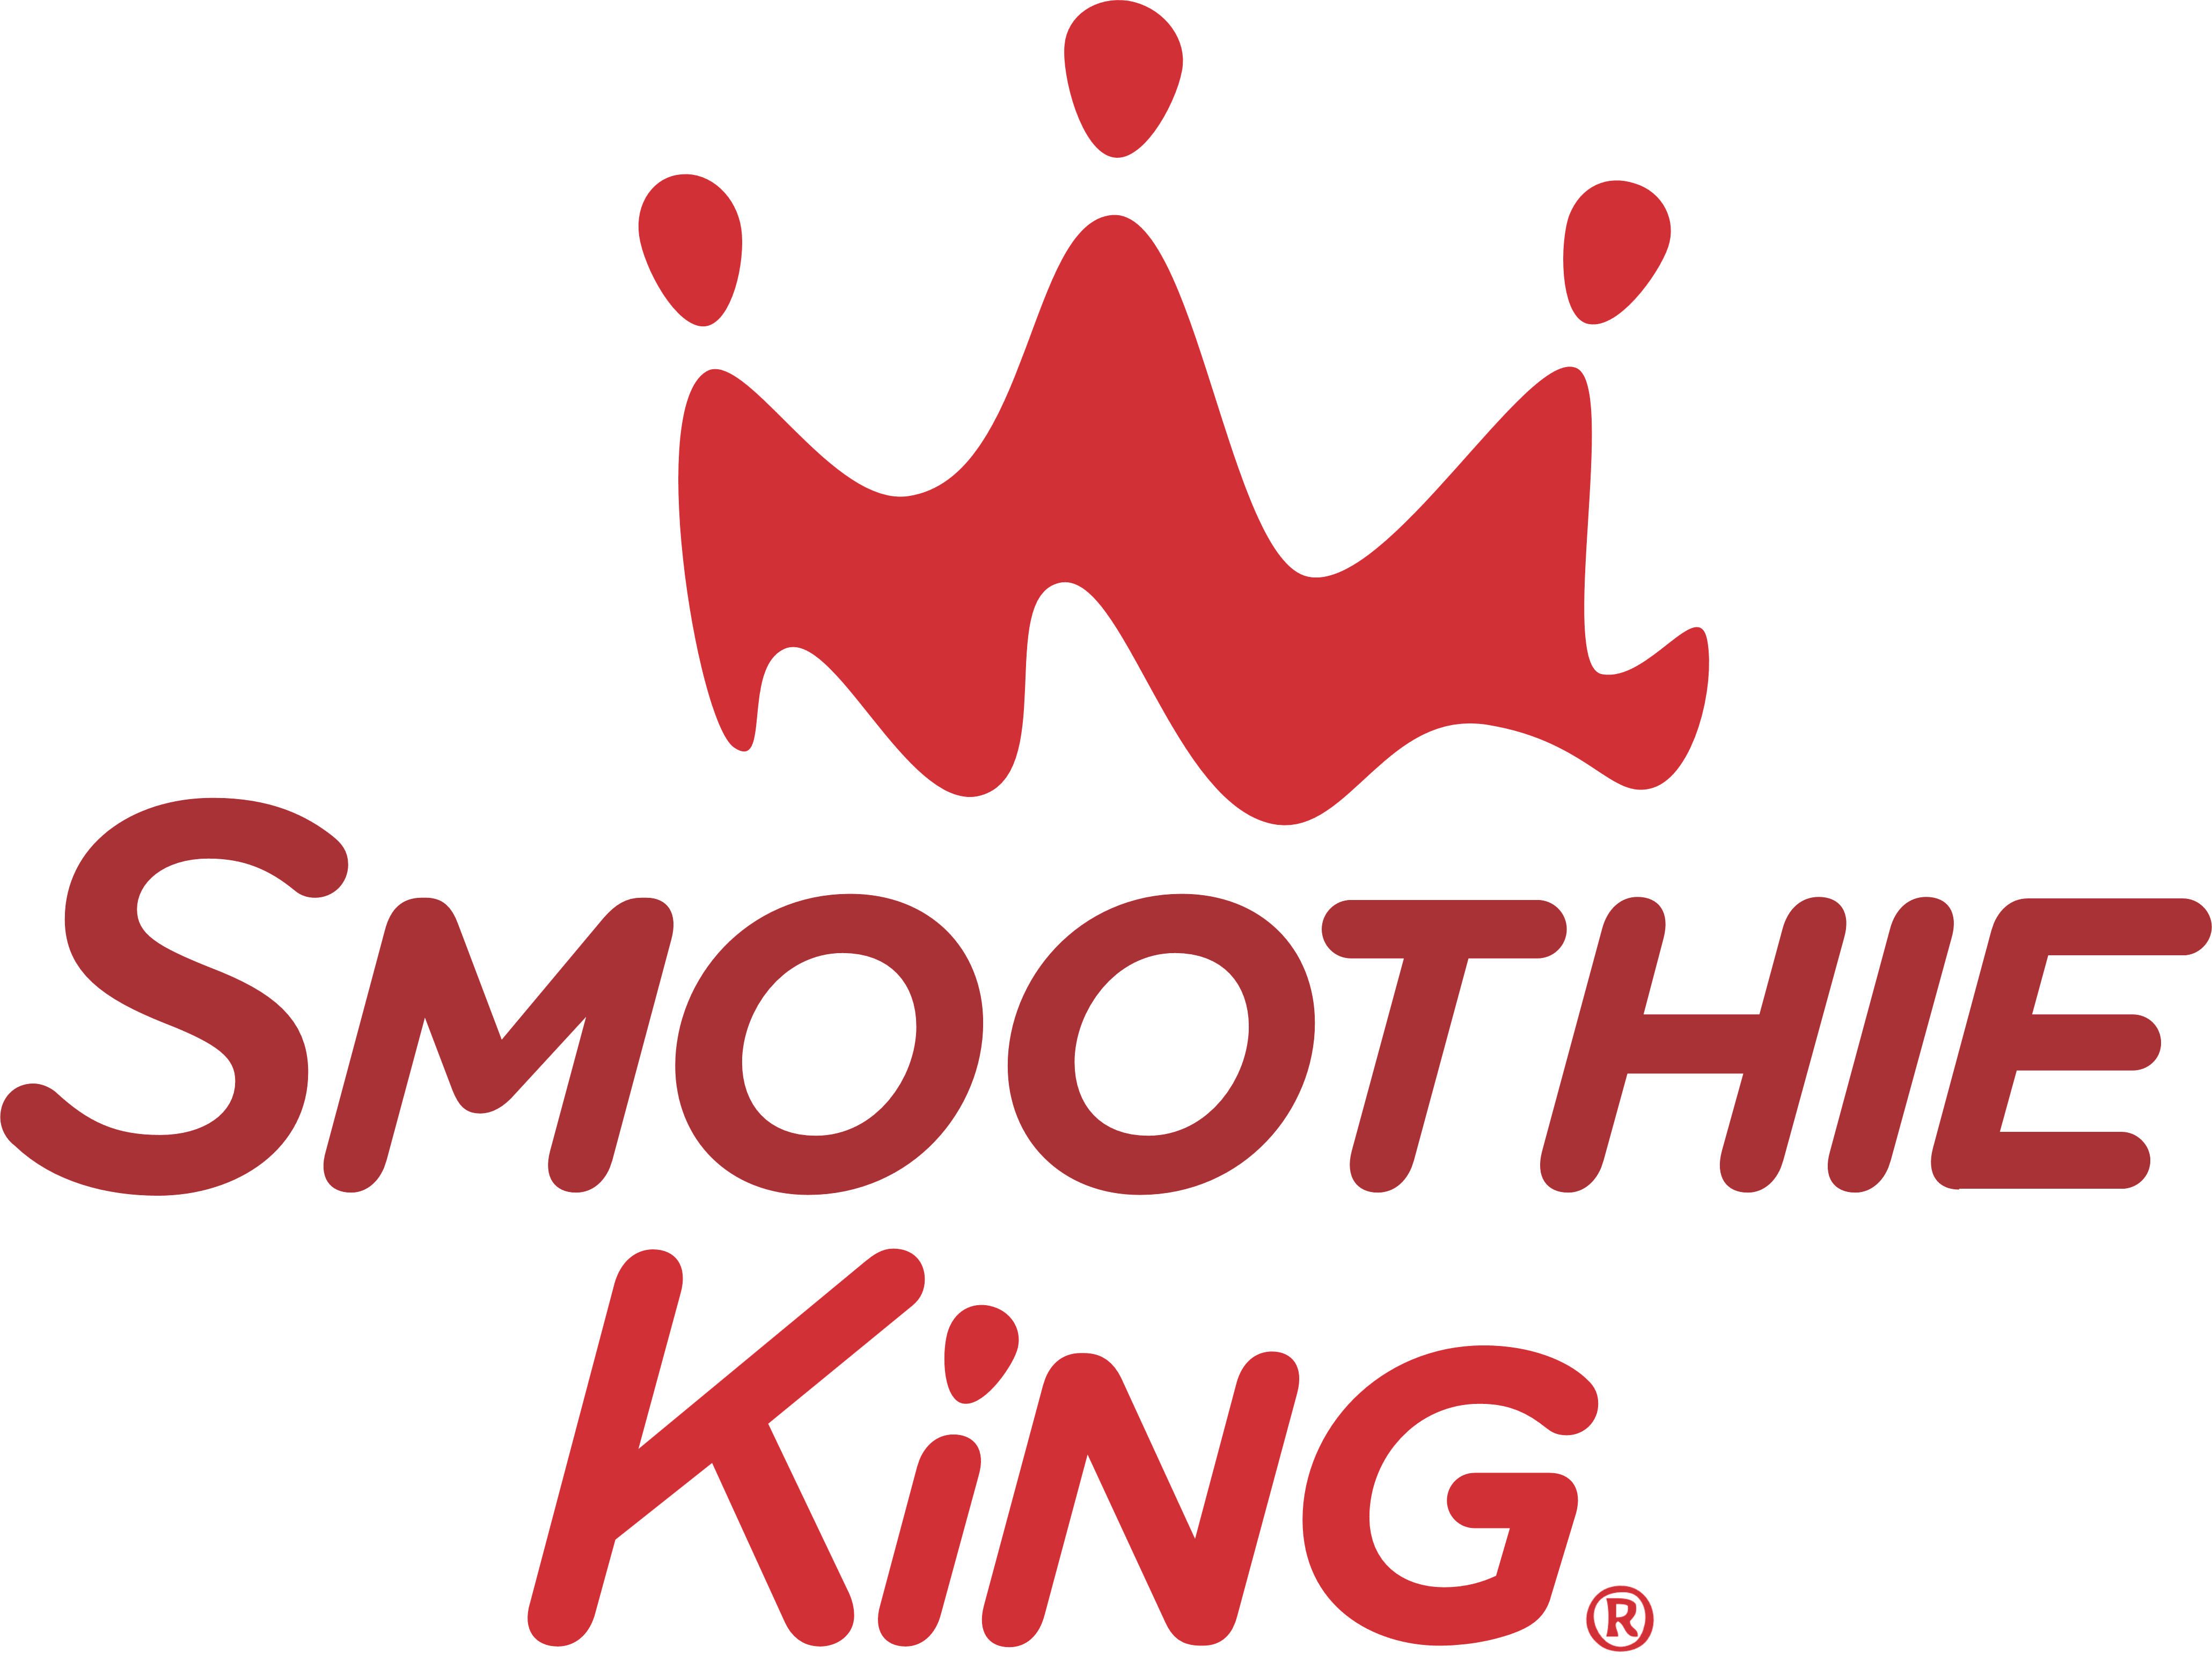 Smoothie King logo, logotype